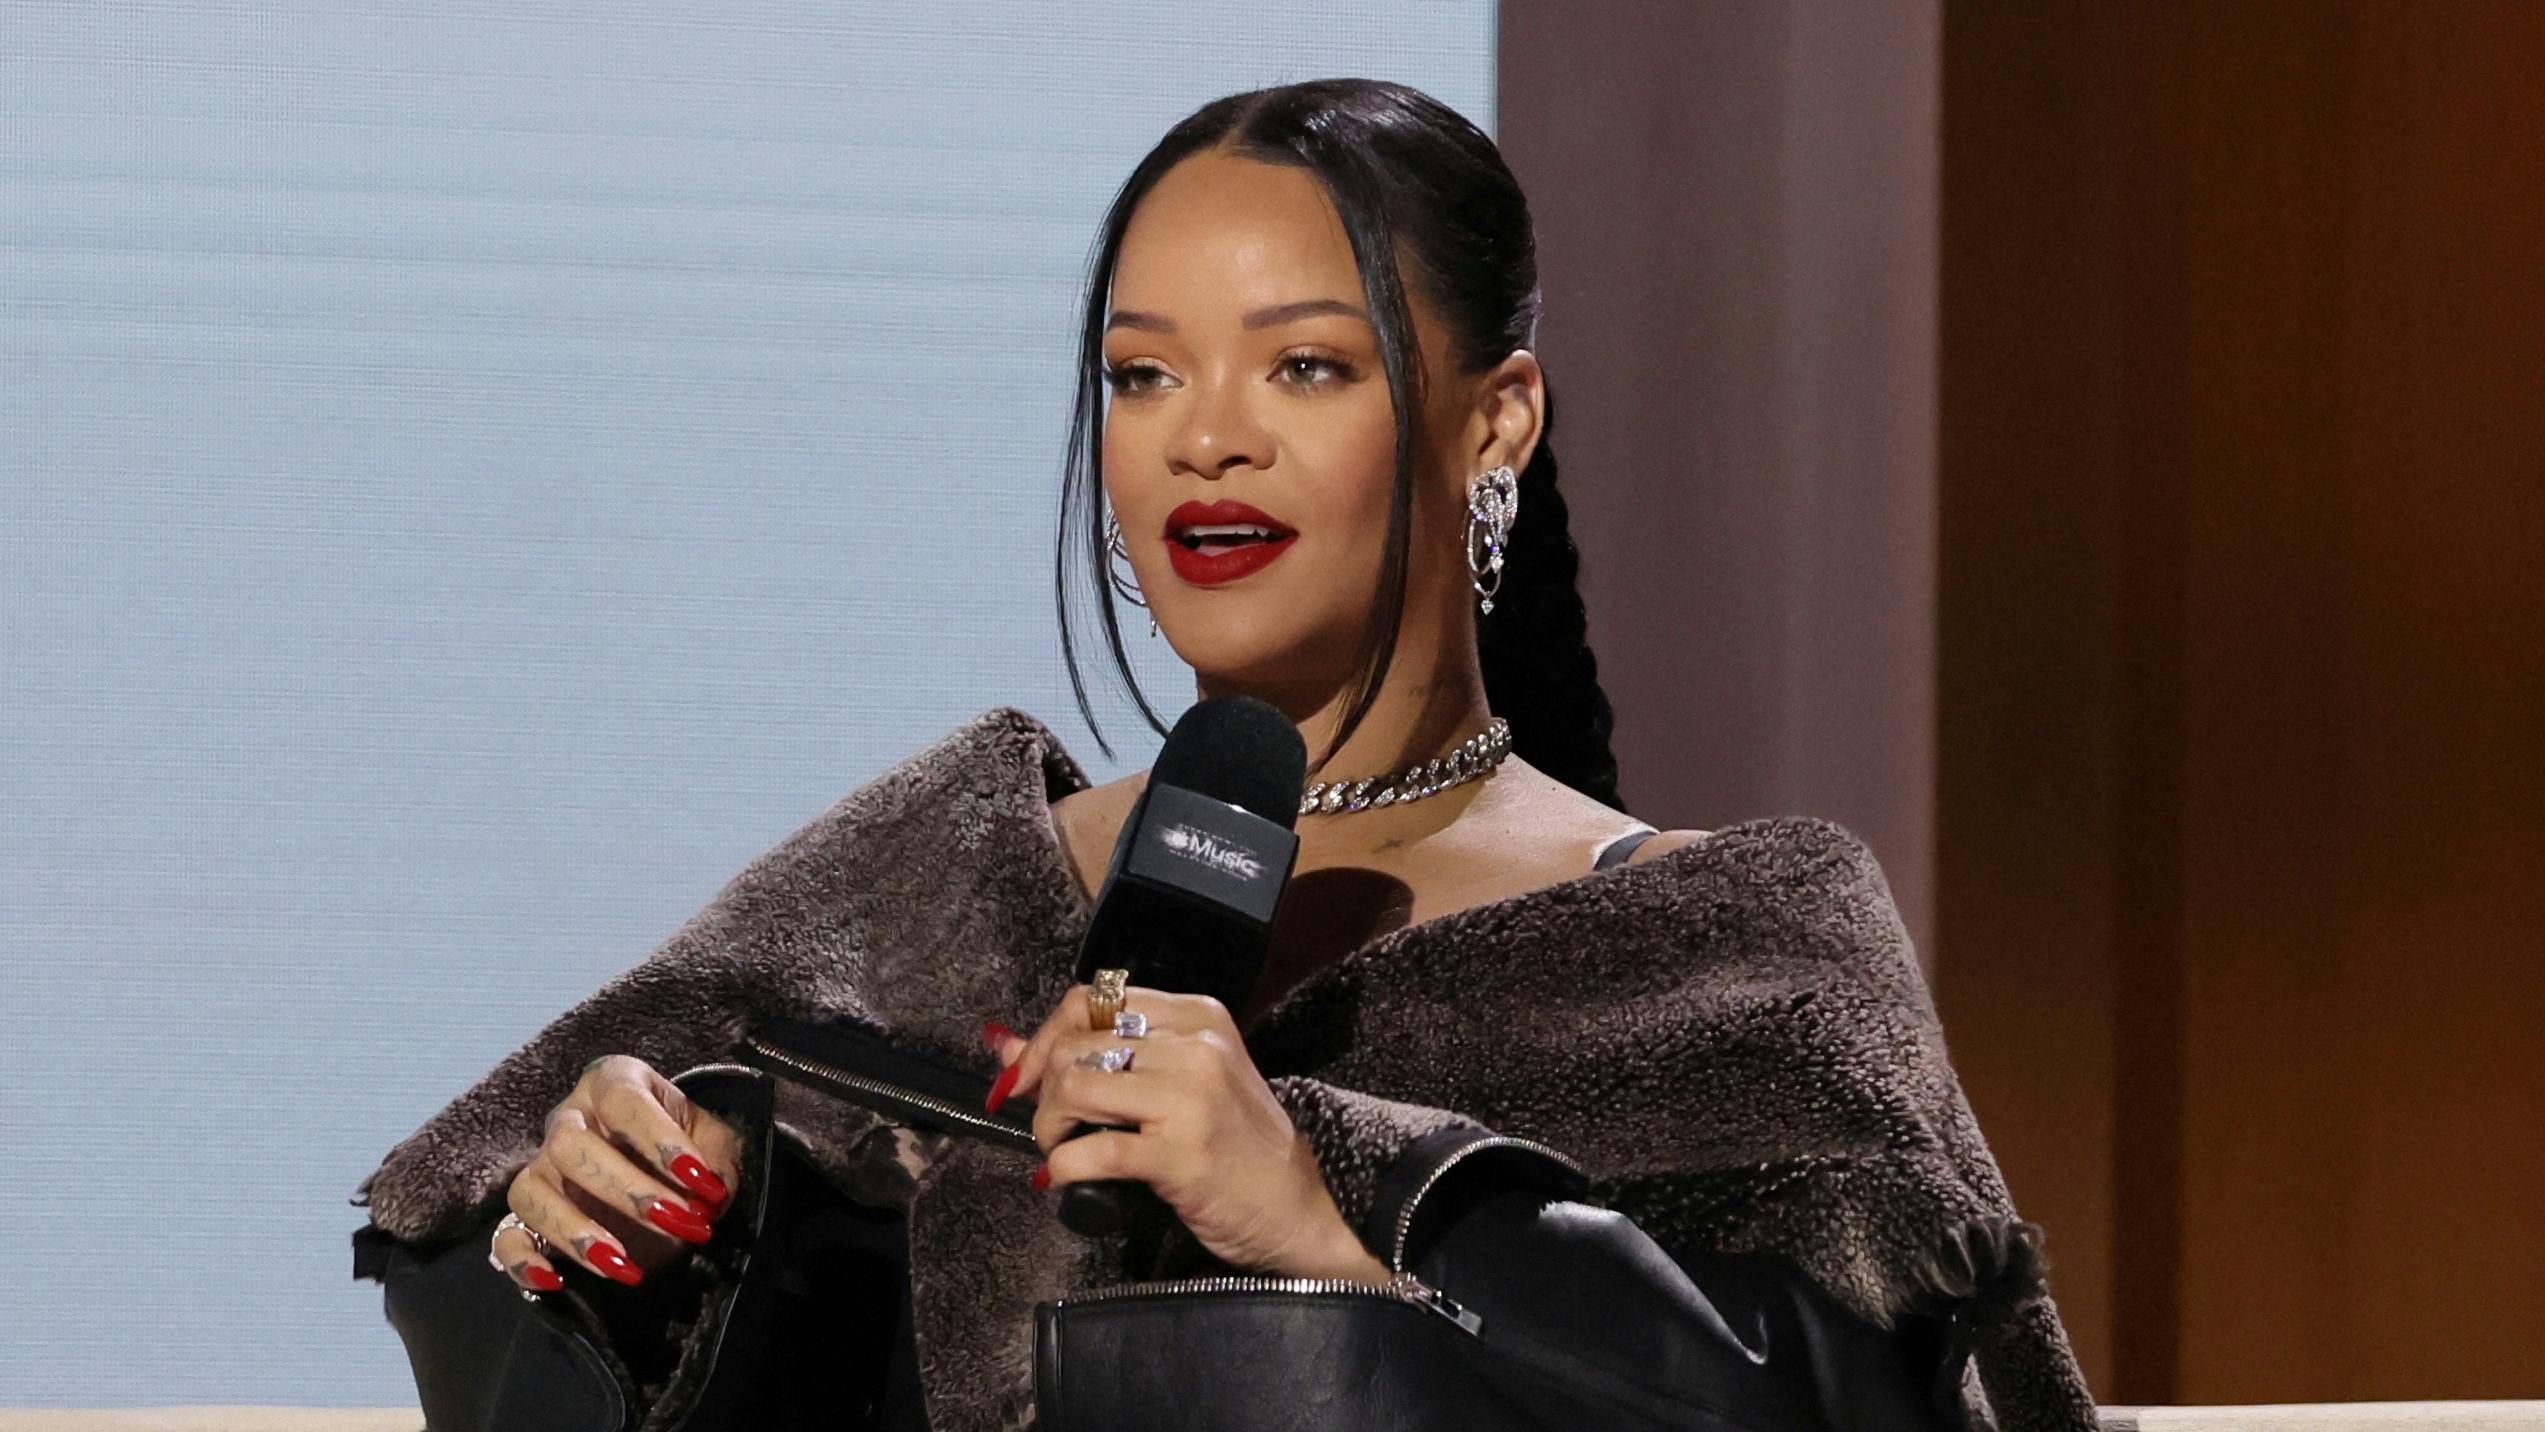 Der var i den grad tænkt over detaljerne, da Rihanna til årets Super Bowl halftime-show afslørede, at hun venter barn nummer to.